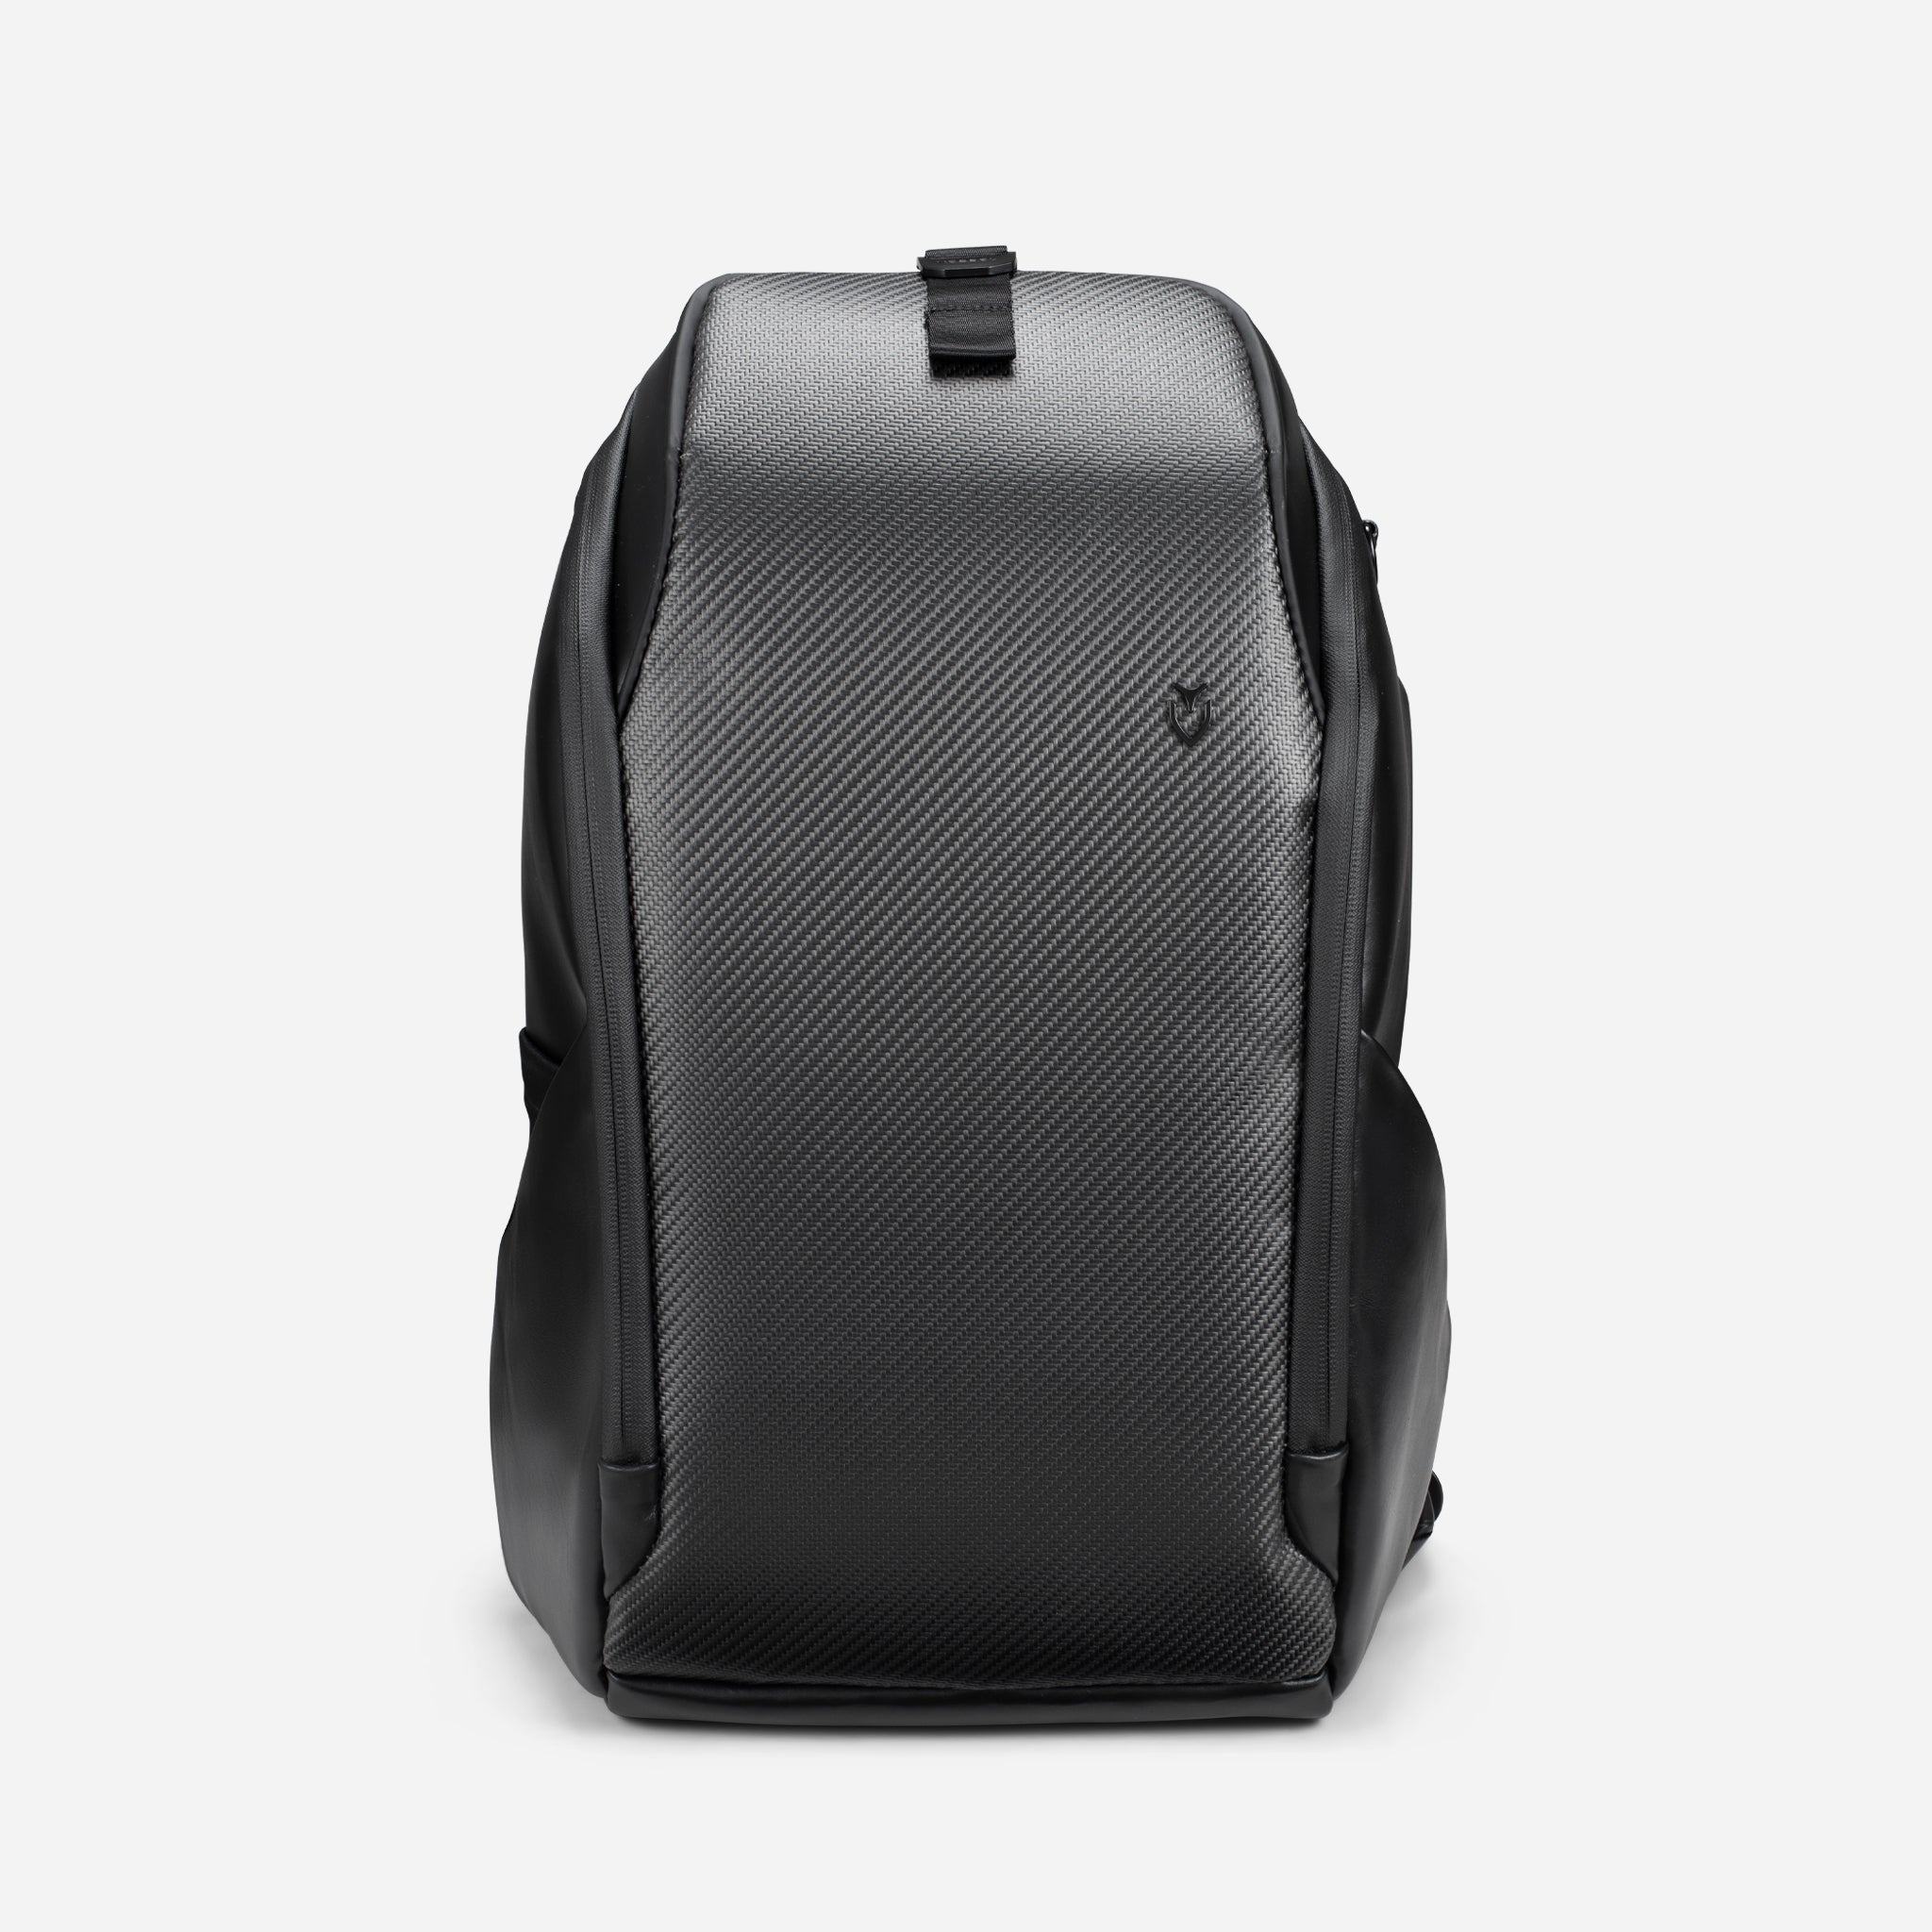 PrimeX Carbon Black Backpack